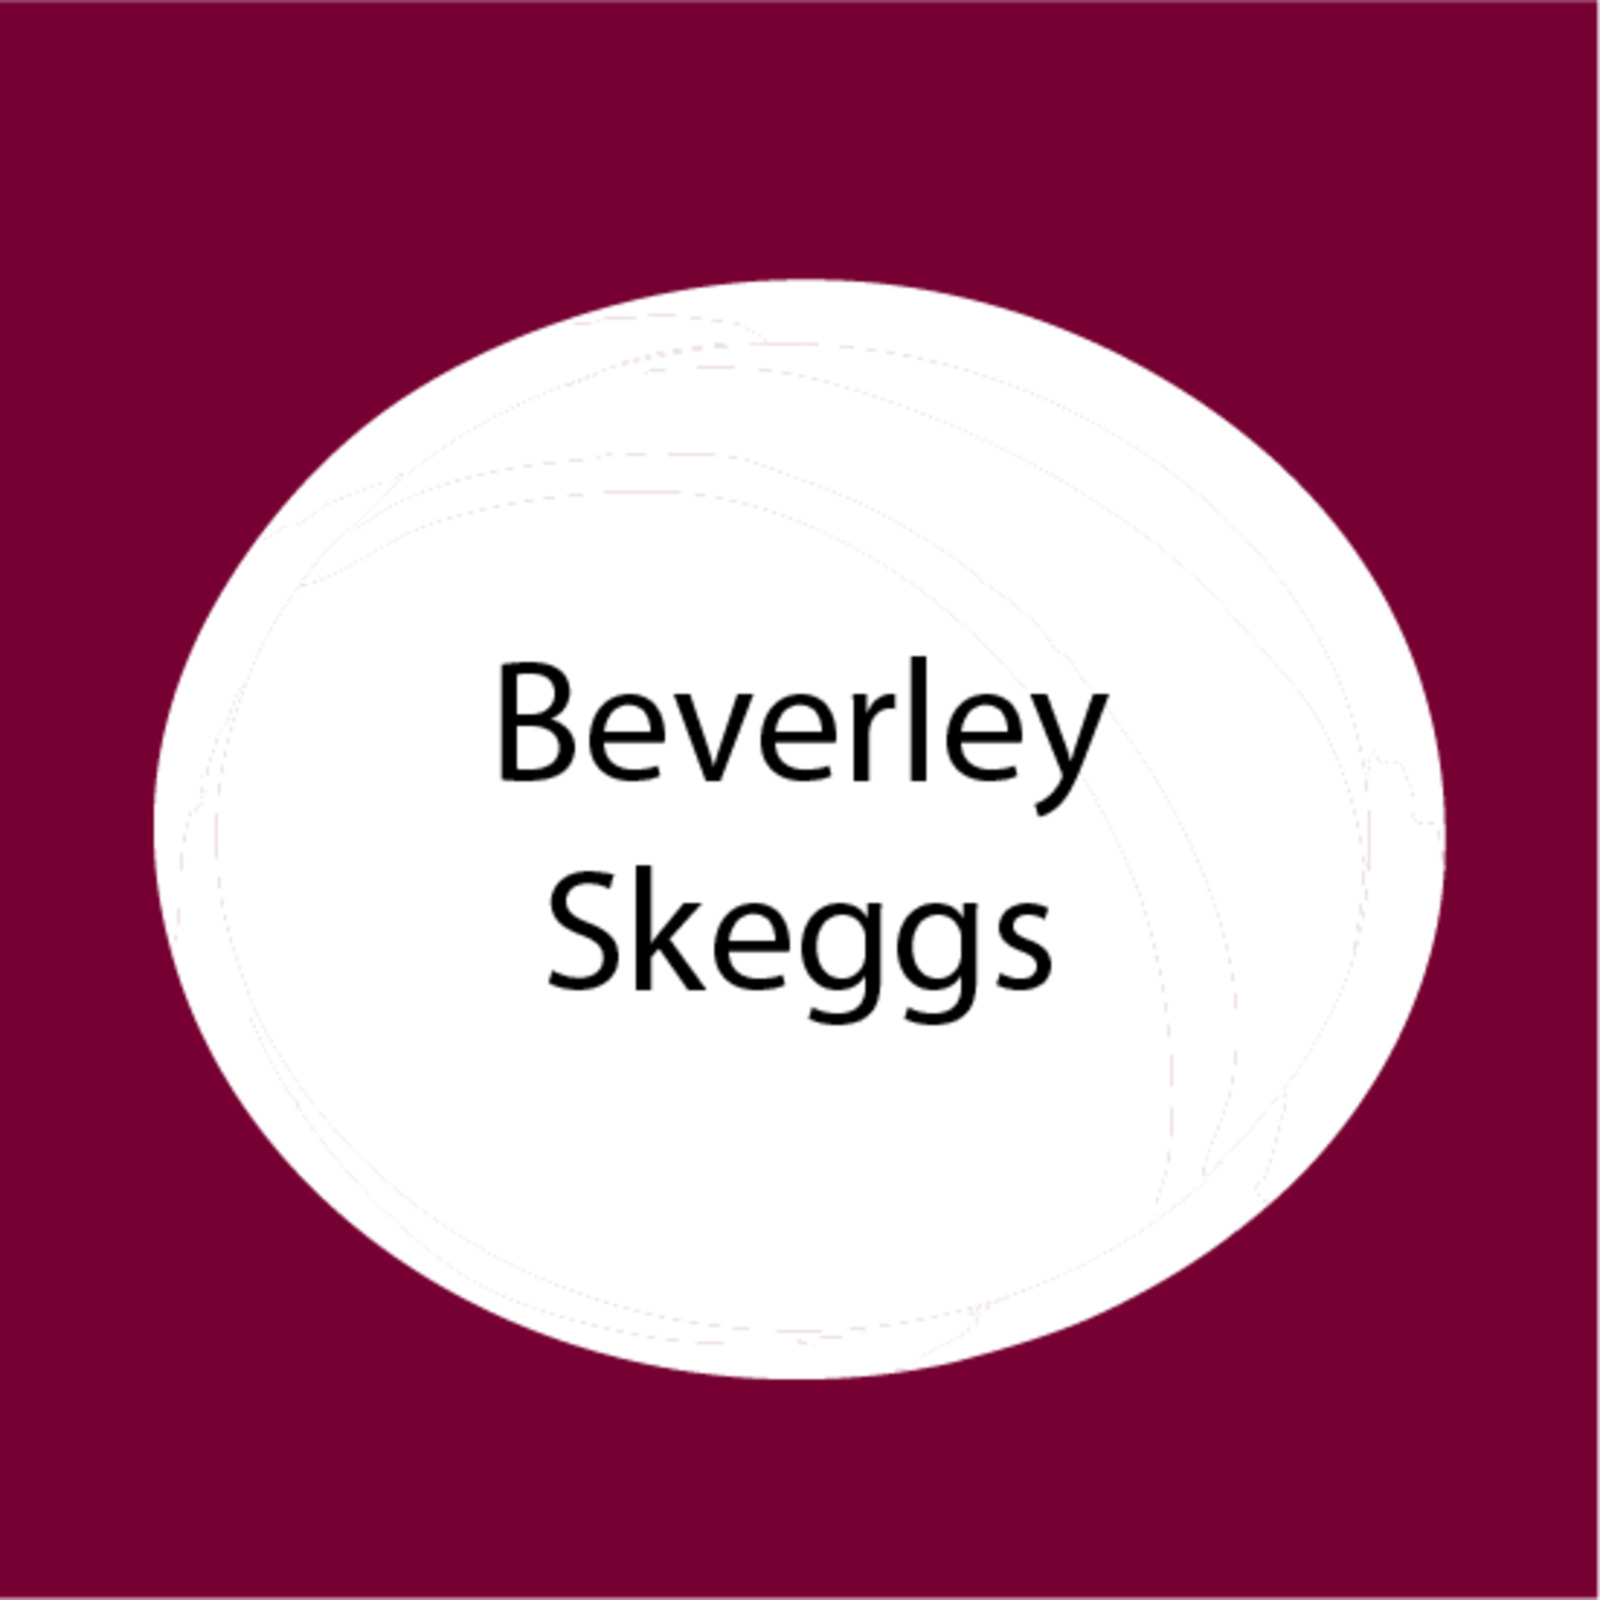 Beverley Skeggs